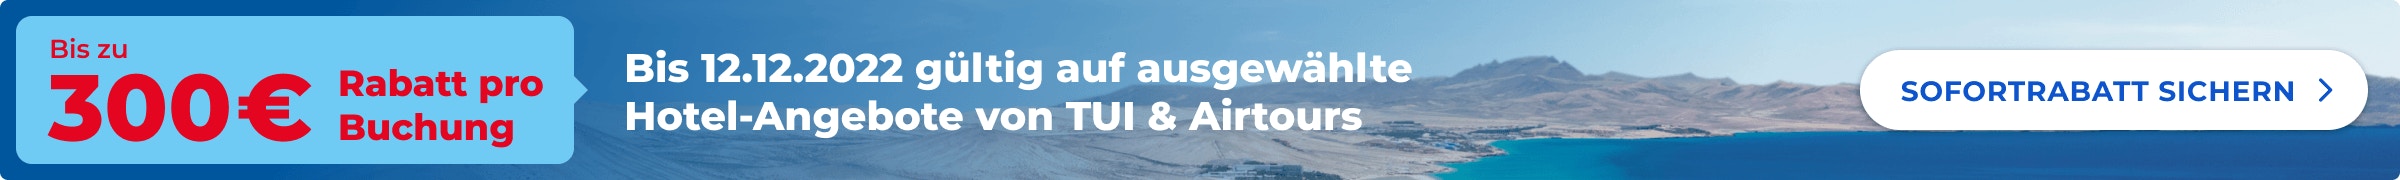 TUI und airtours bieten bis zum 12.12. einen zusätzlichen Nachlass von bis zu 300 Euro pro Buchung auf ausgewählte Hotels. Der Rabatt wird von TUI automatisch abgezogen.